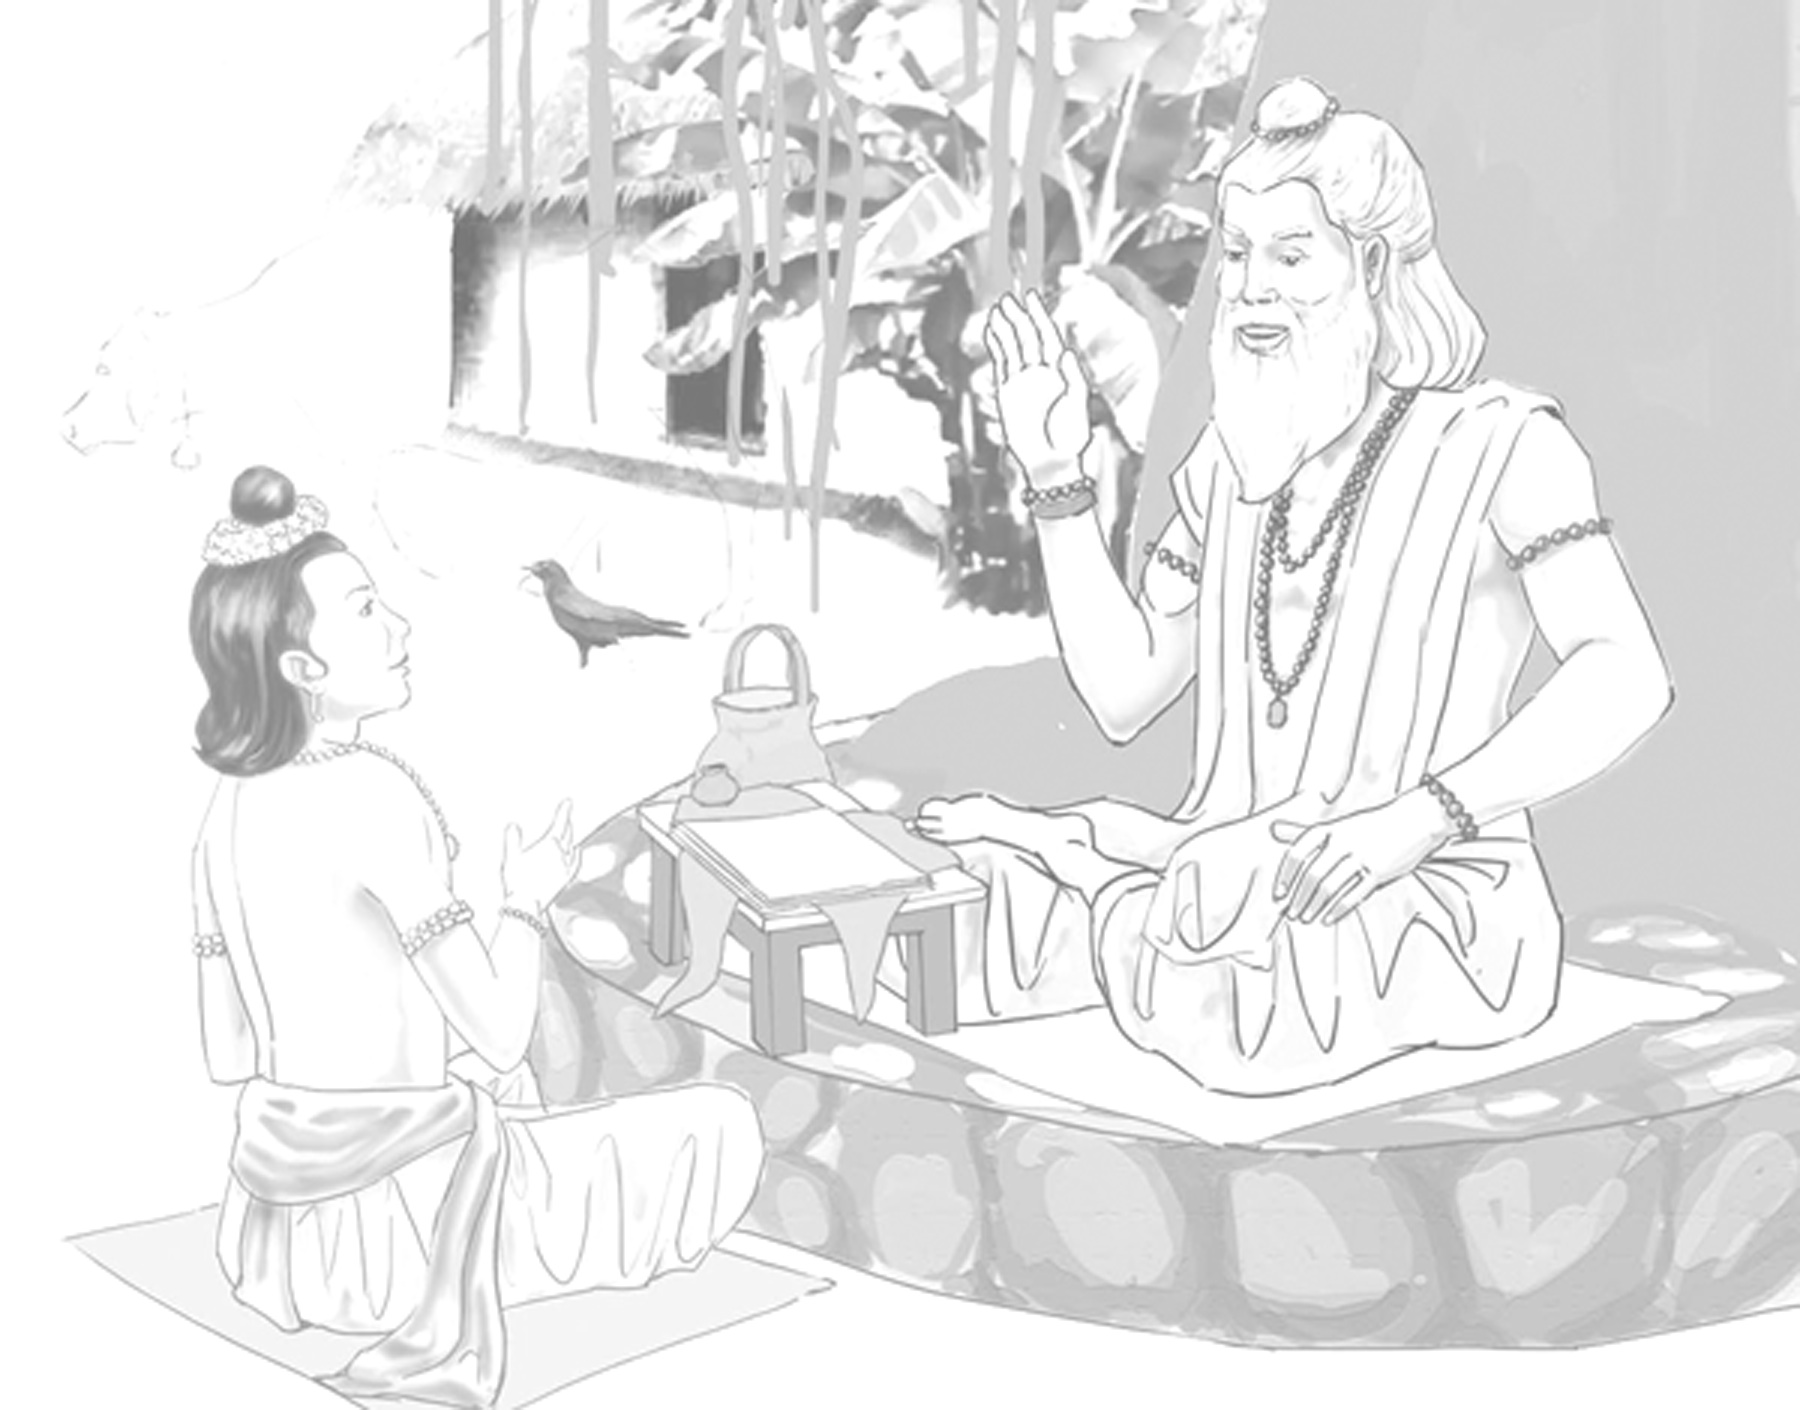 Rama and Vasishtha